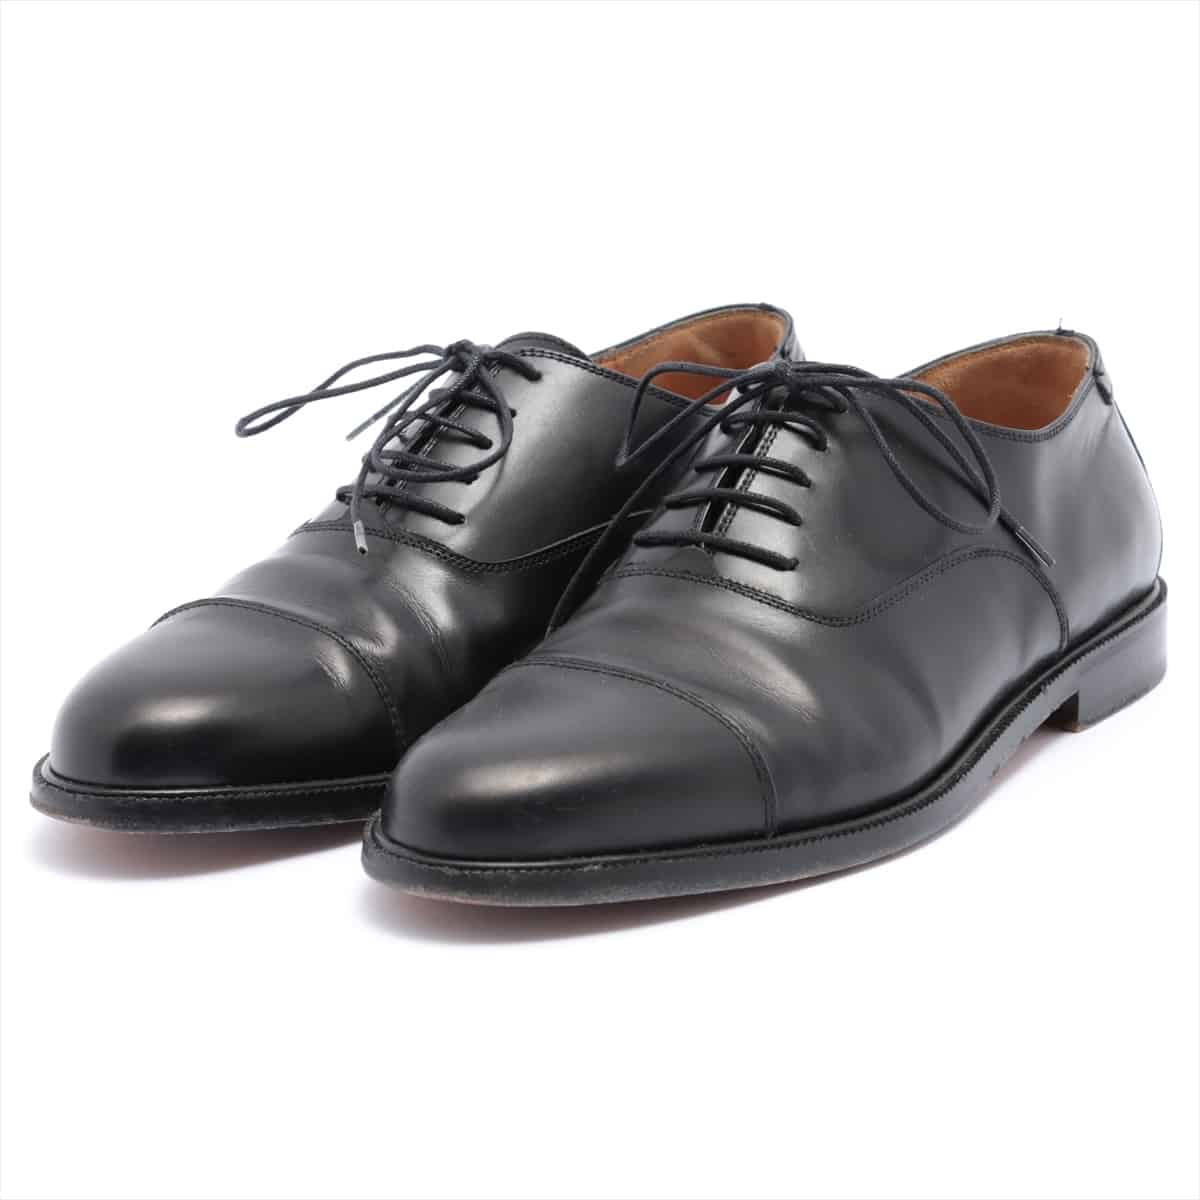 Ferragamo Leather Leather shoes 7 Men's Black